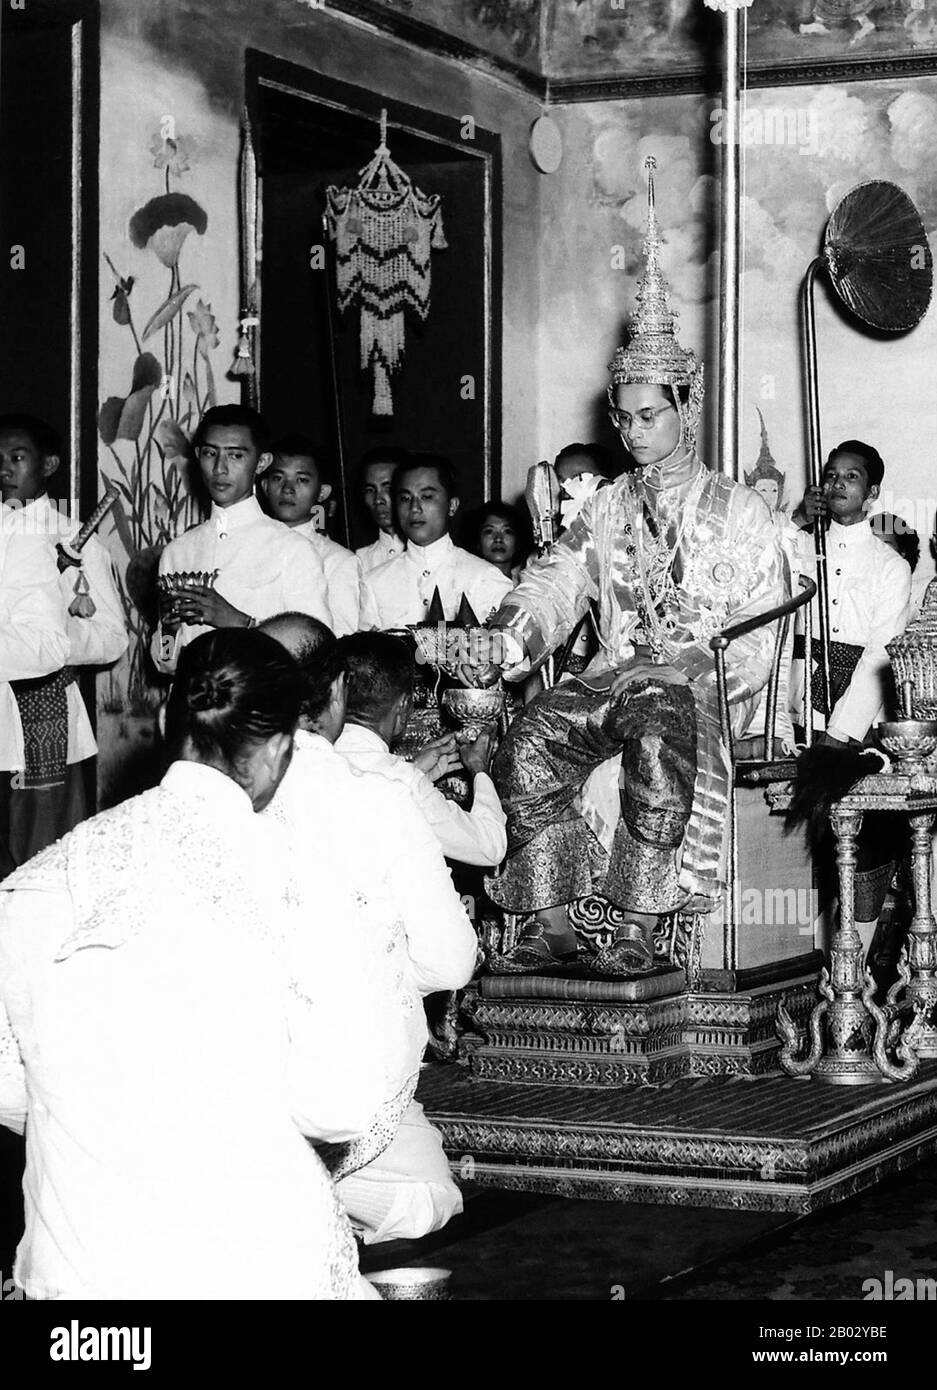 Bhumibol Adulyadej (Phumiphon Adunyadet, nacido el 5 de diciembre de 1927) es el actual Rey de Tailandia. Él es conocido como Rama IX (y dentro de la familia real tailandesa y para los asociados cercanos simplemente como Lek. Habiendo reinado desde el 9 de junio de 1946, es el actual jefe de estado más antiguo del mundo y el monarca más reinante de la historia tailandesa. Foto de stock